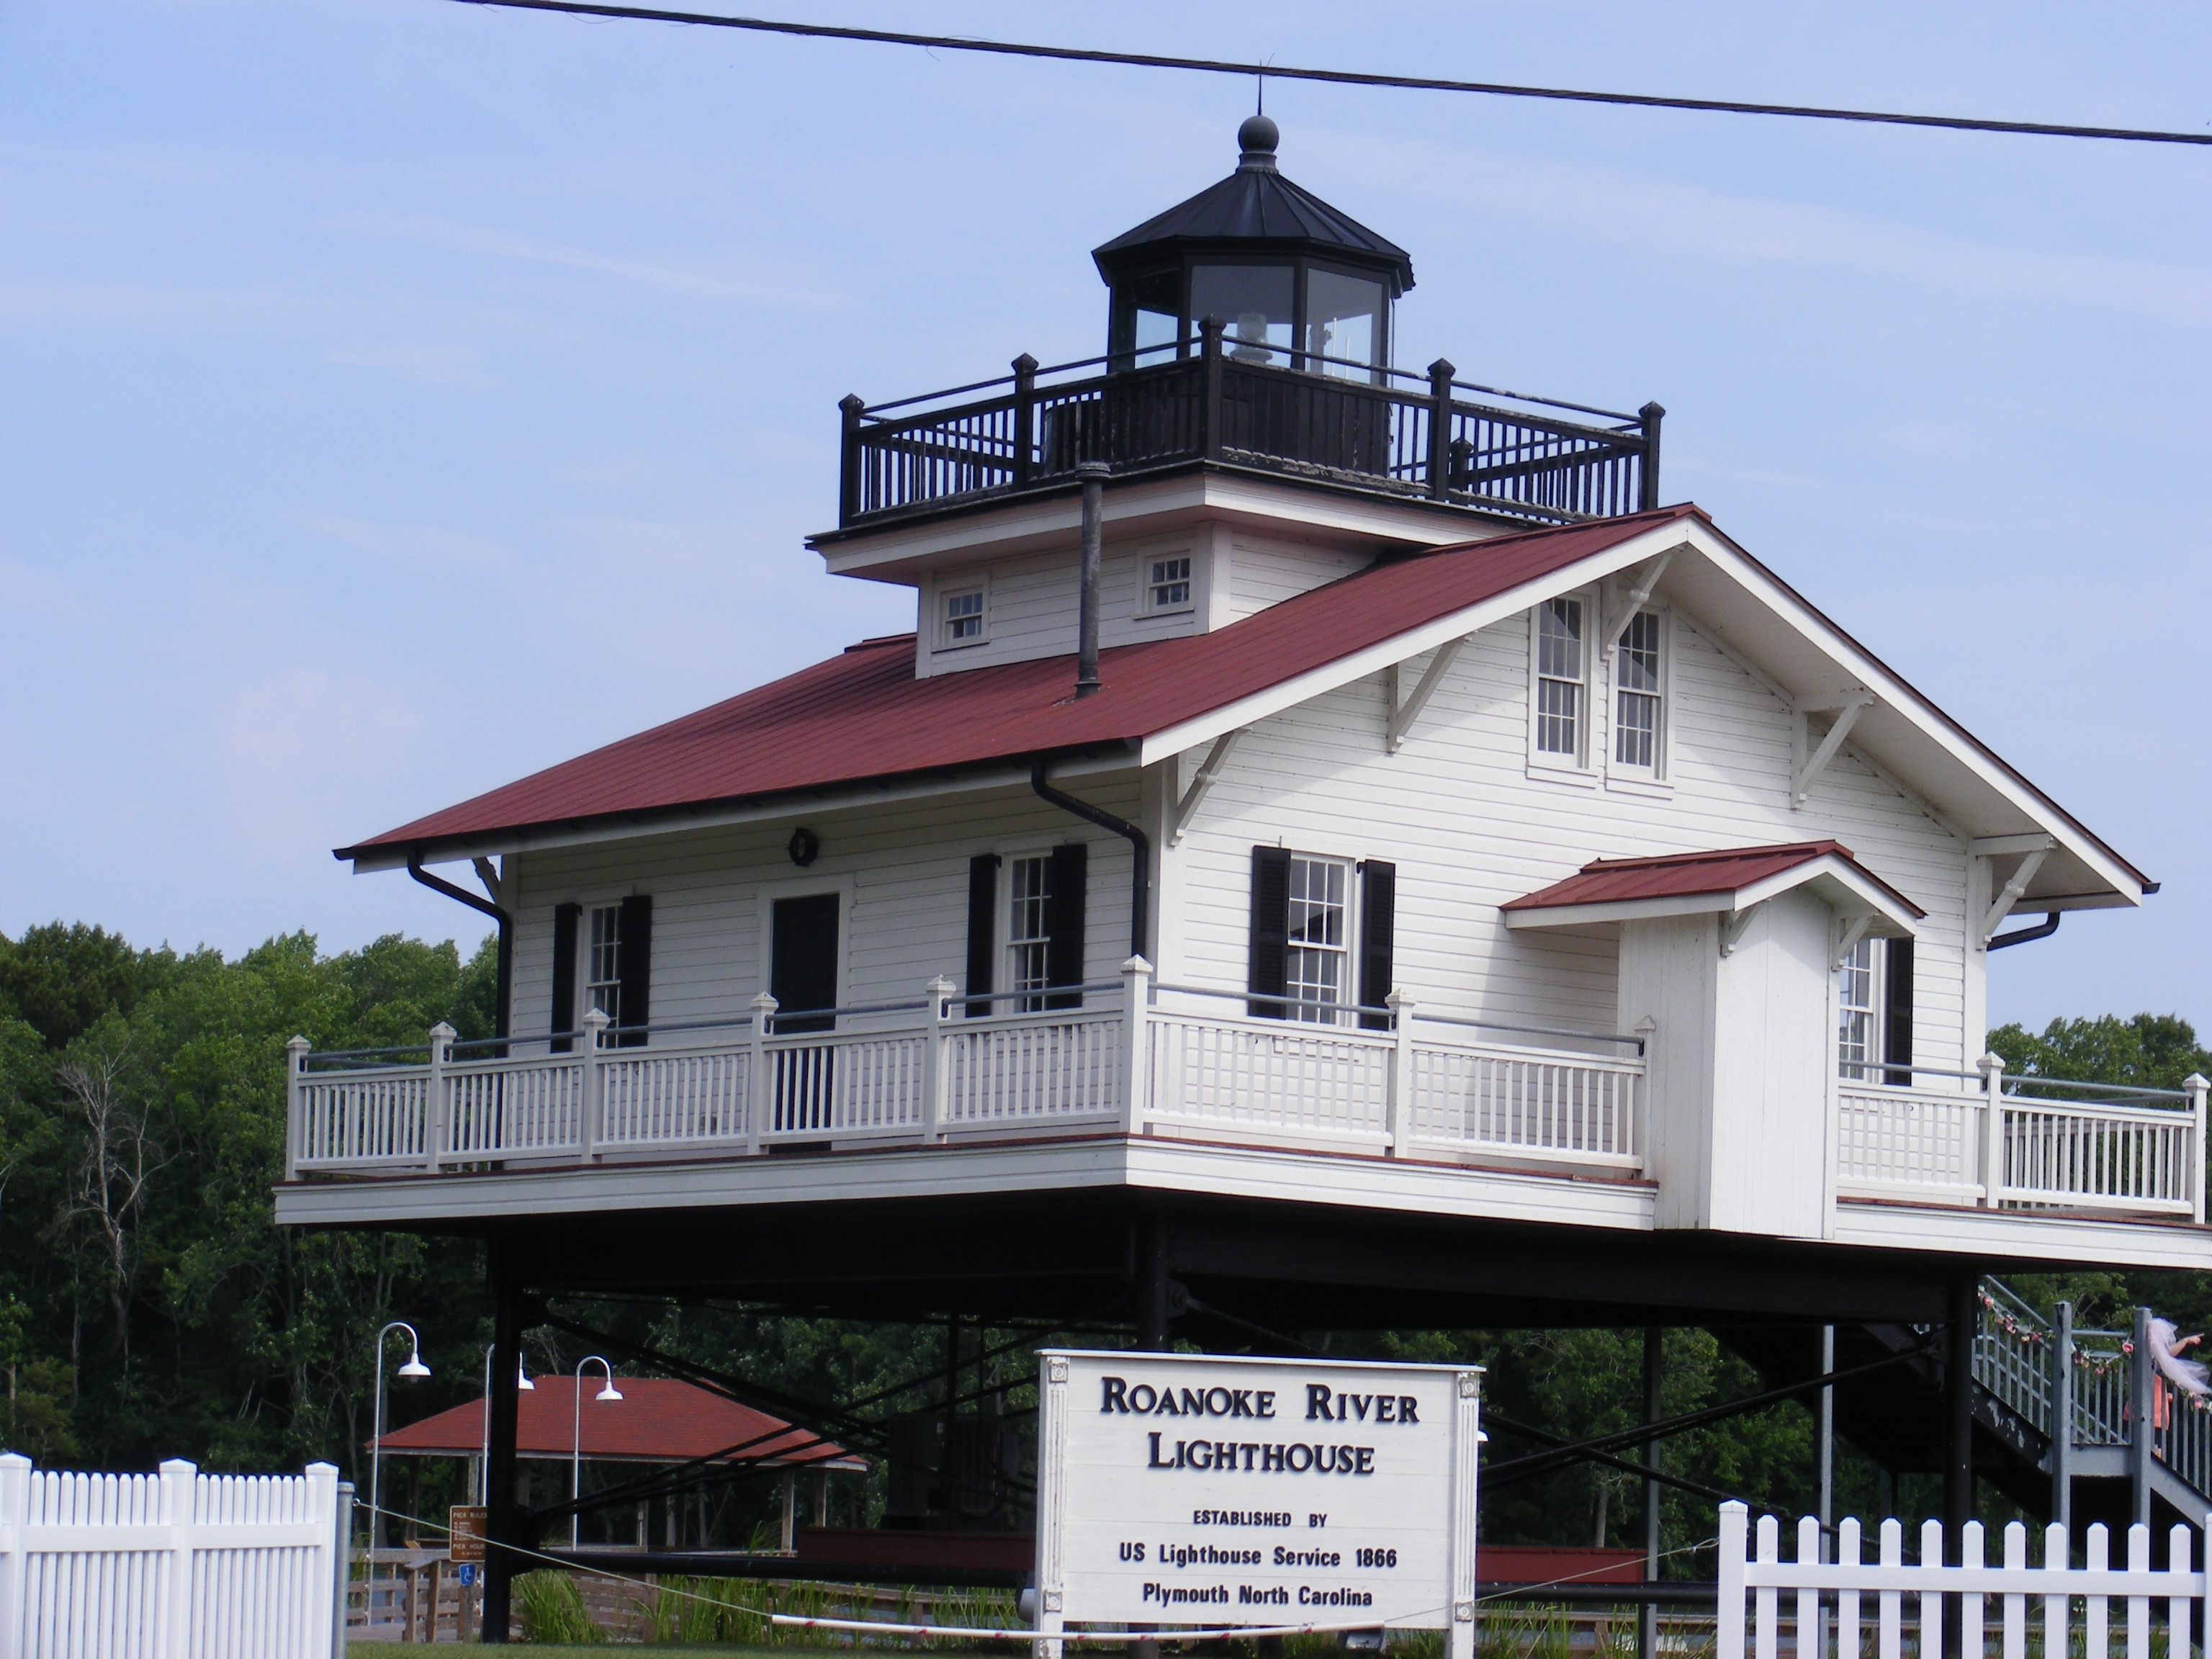 Roanoke River Lighthouse Marker